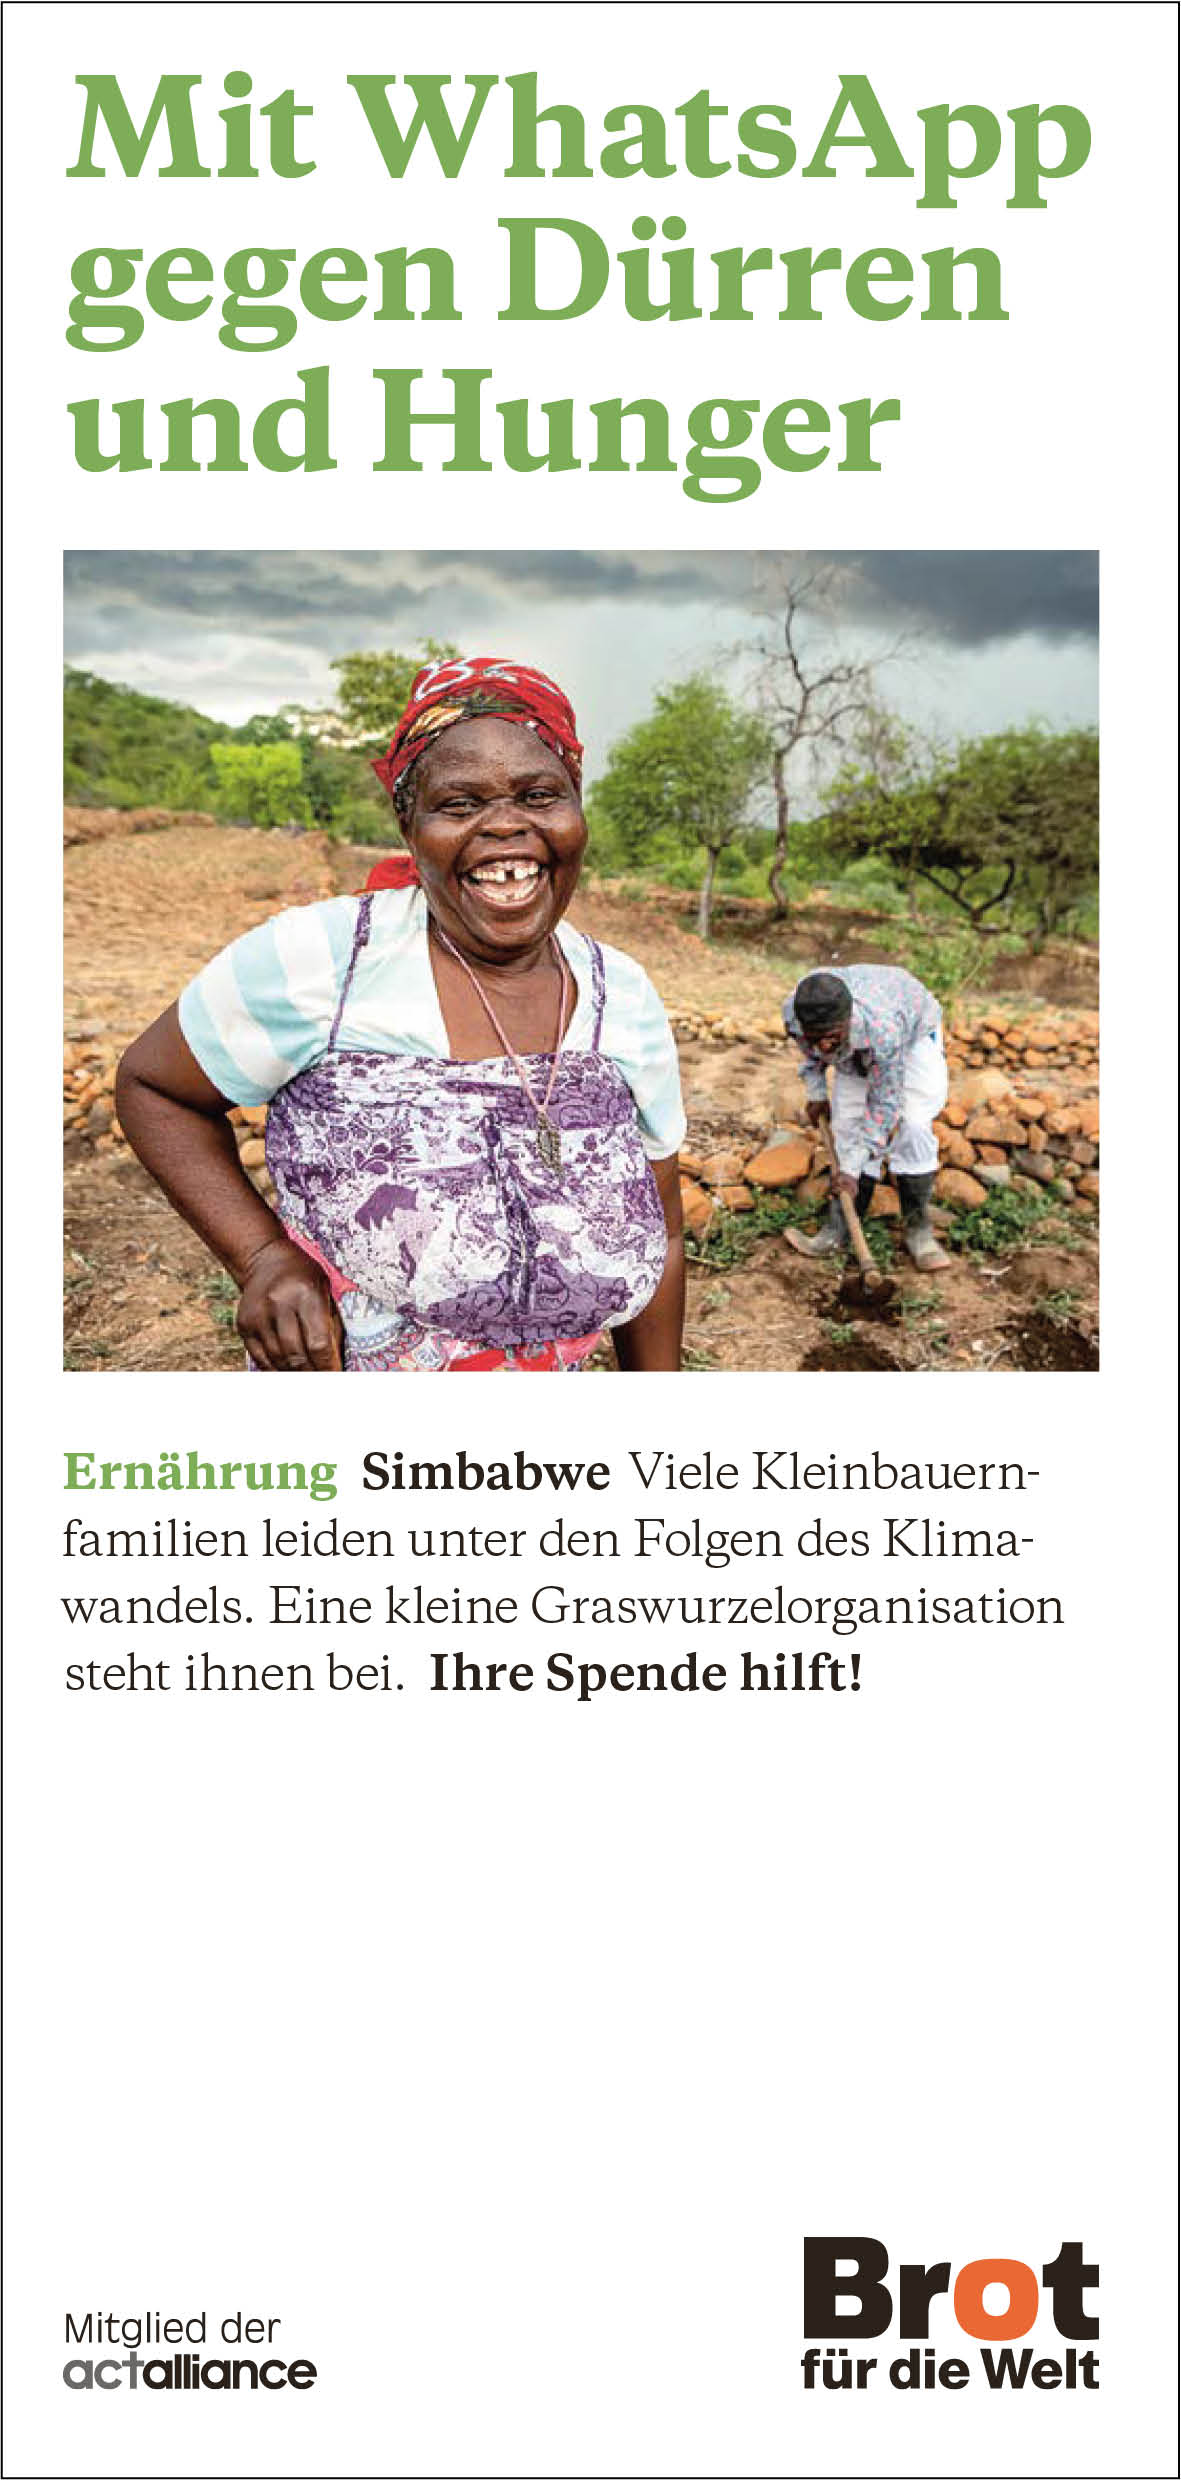 Simbabwe - Mit WhatsApp gegen Dürren und Hunger (Faltblatt Ernährung) 